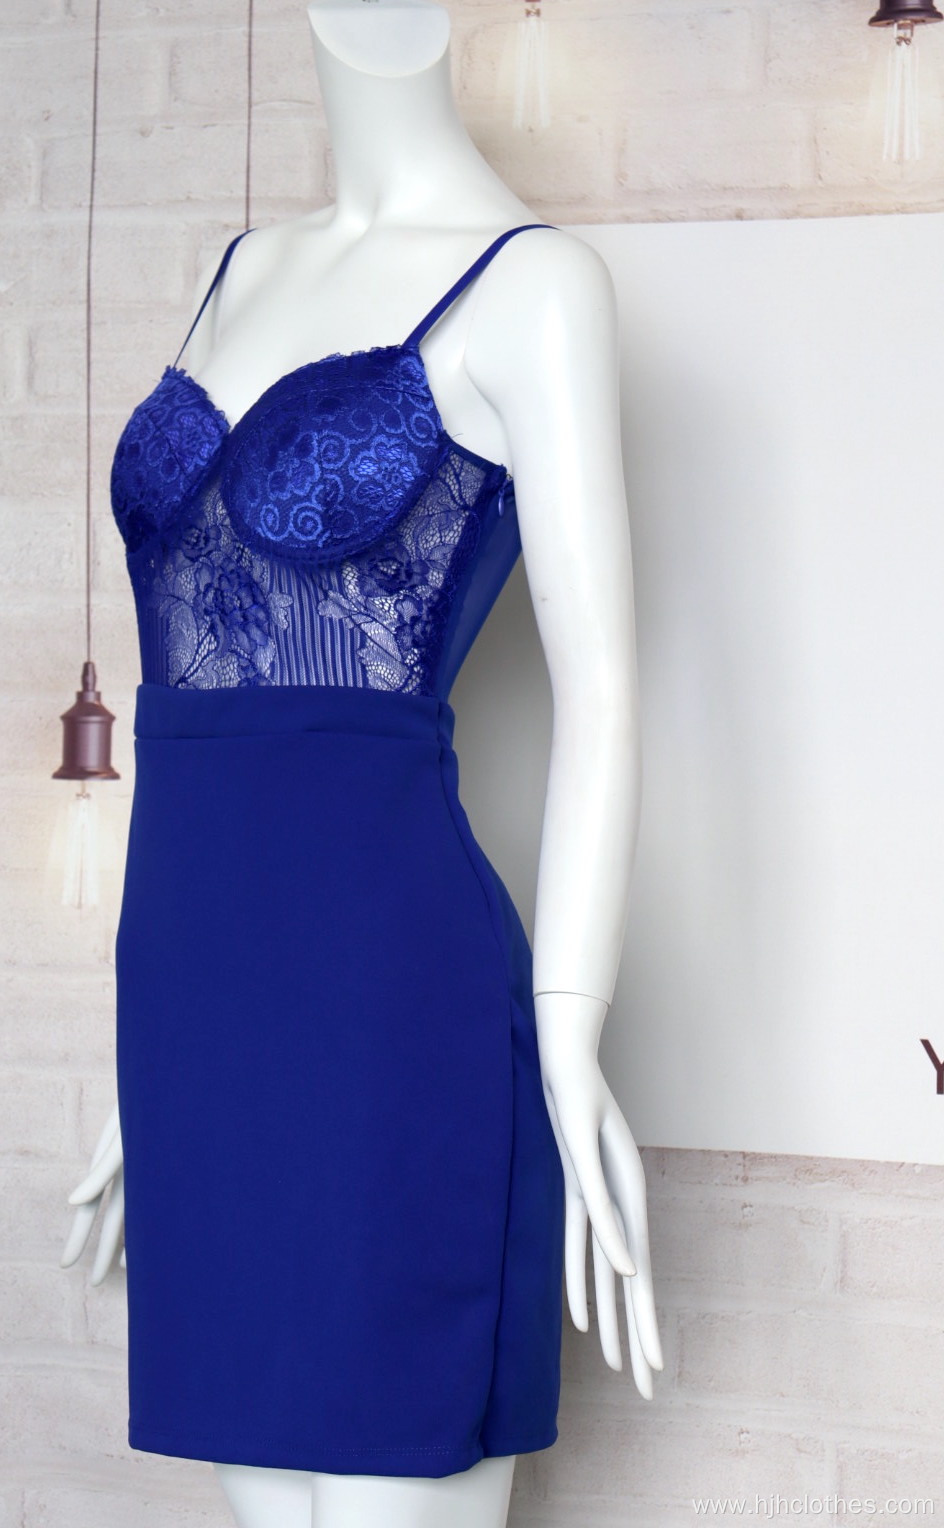 Ladies Blue Lace Halter Dress